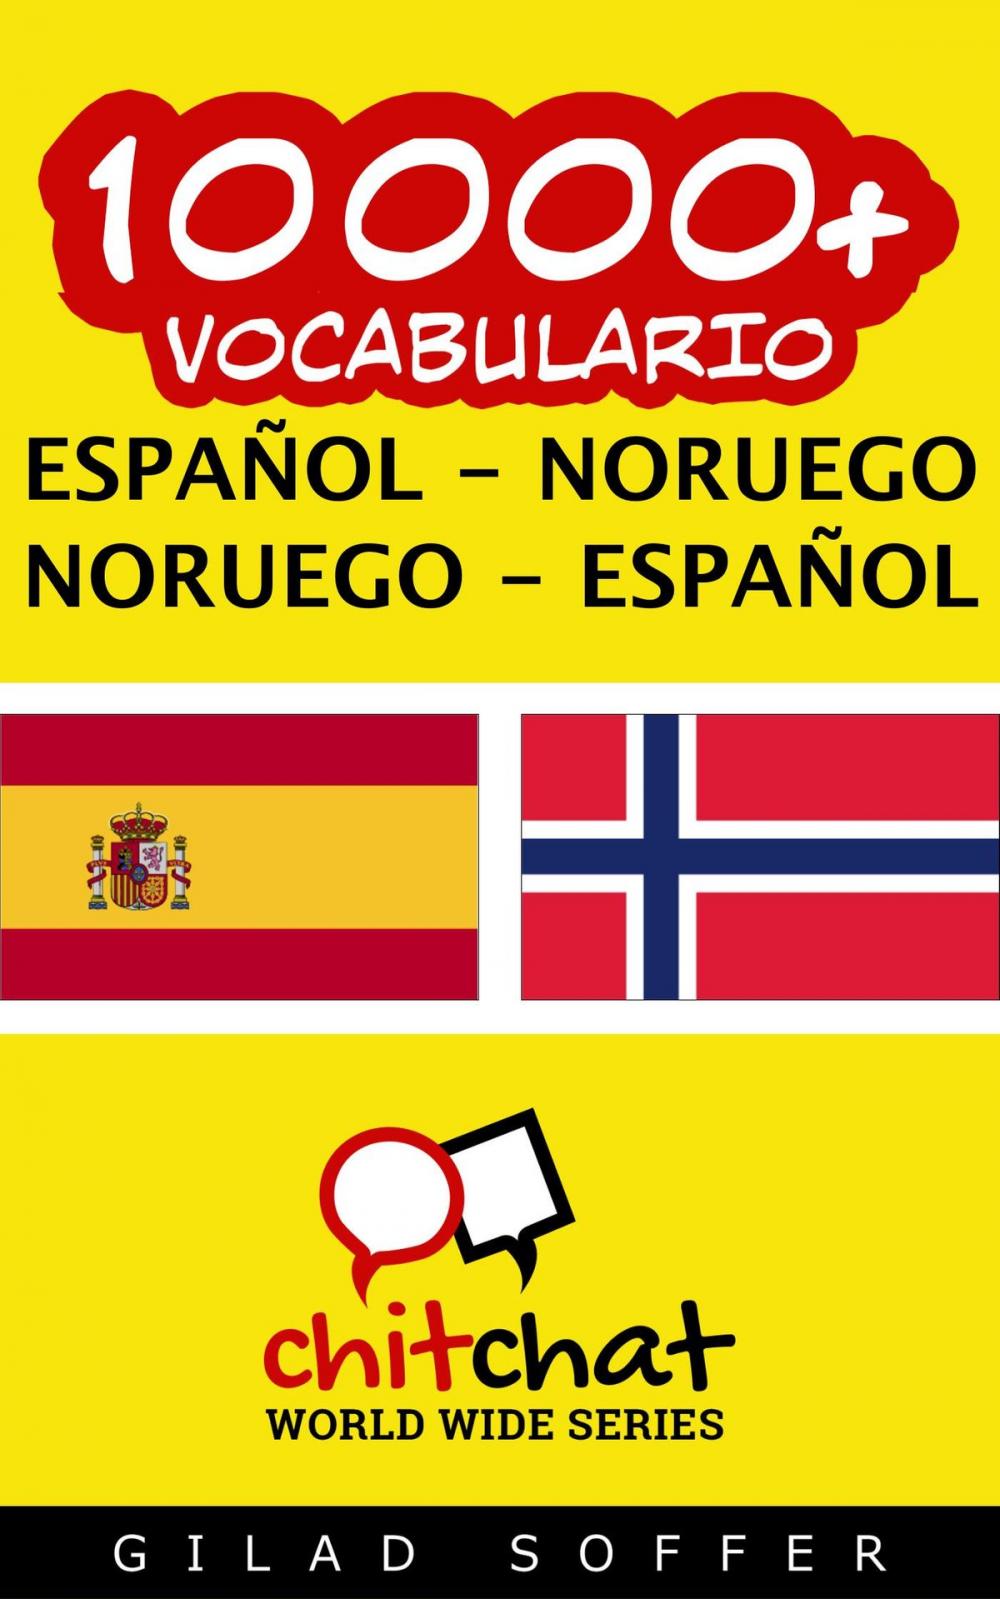 Big bigCover of 10000+ vocabulario español - noruego